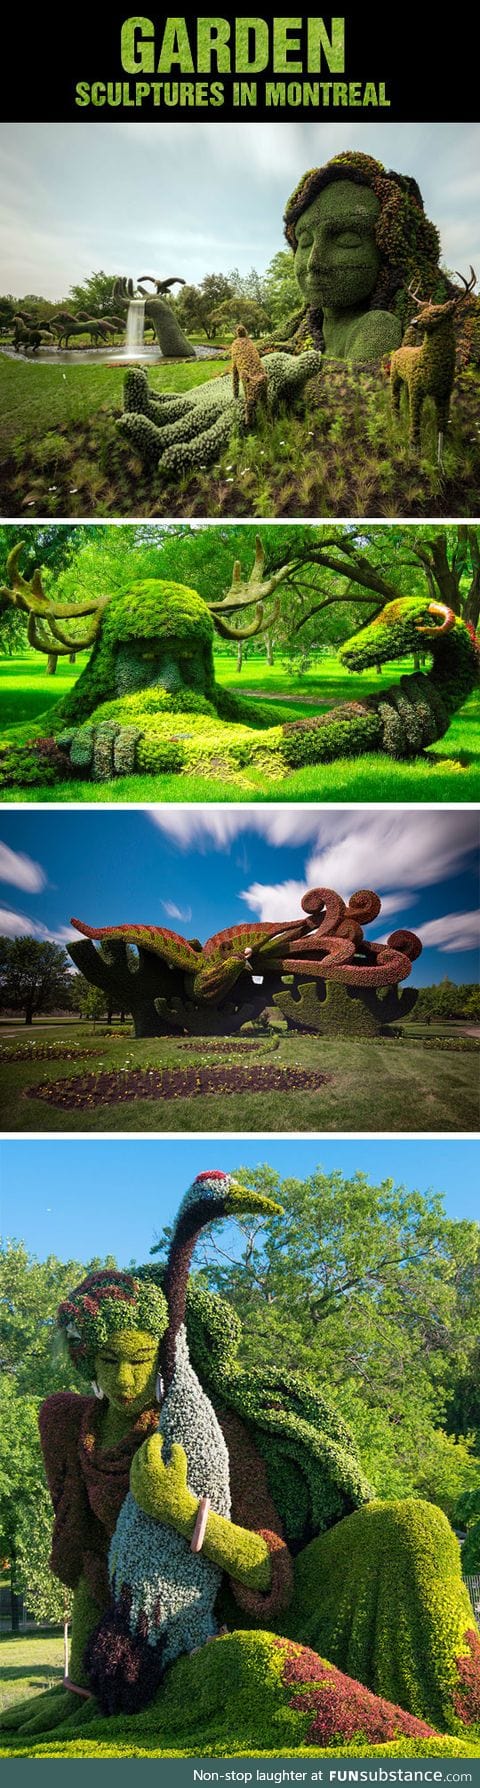 Magnificent garden sculptures in montreal